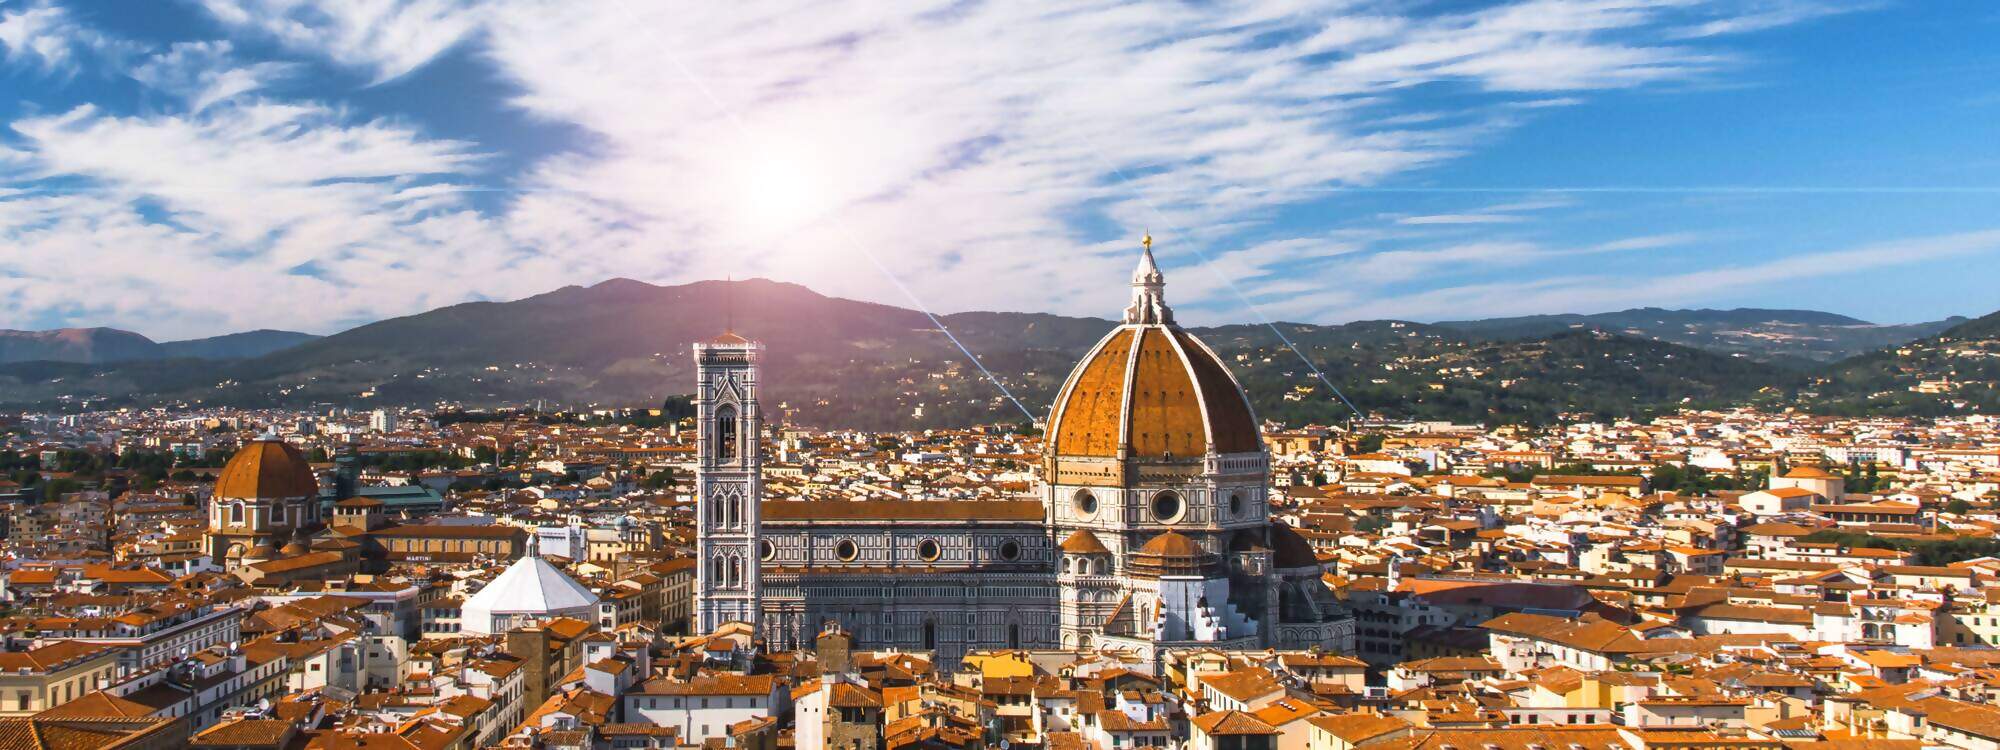 Der Dom und die Altstadt - Florenz